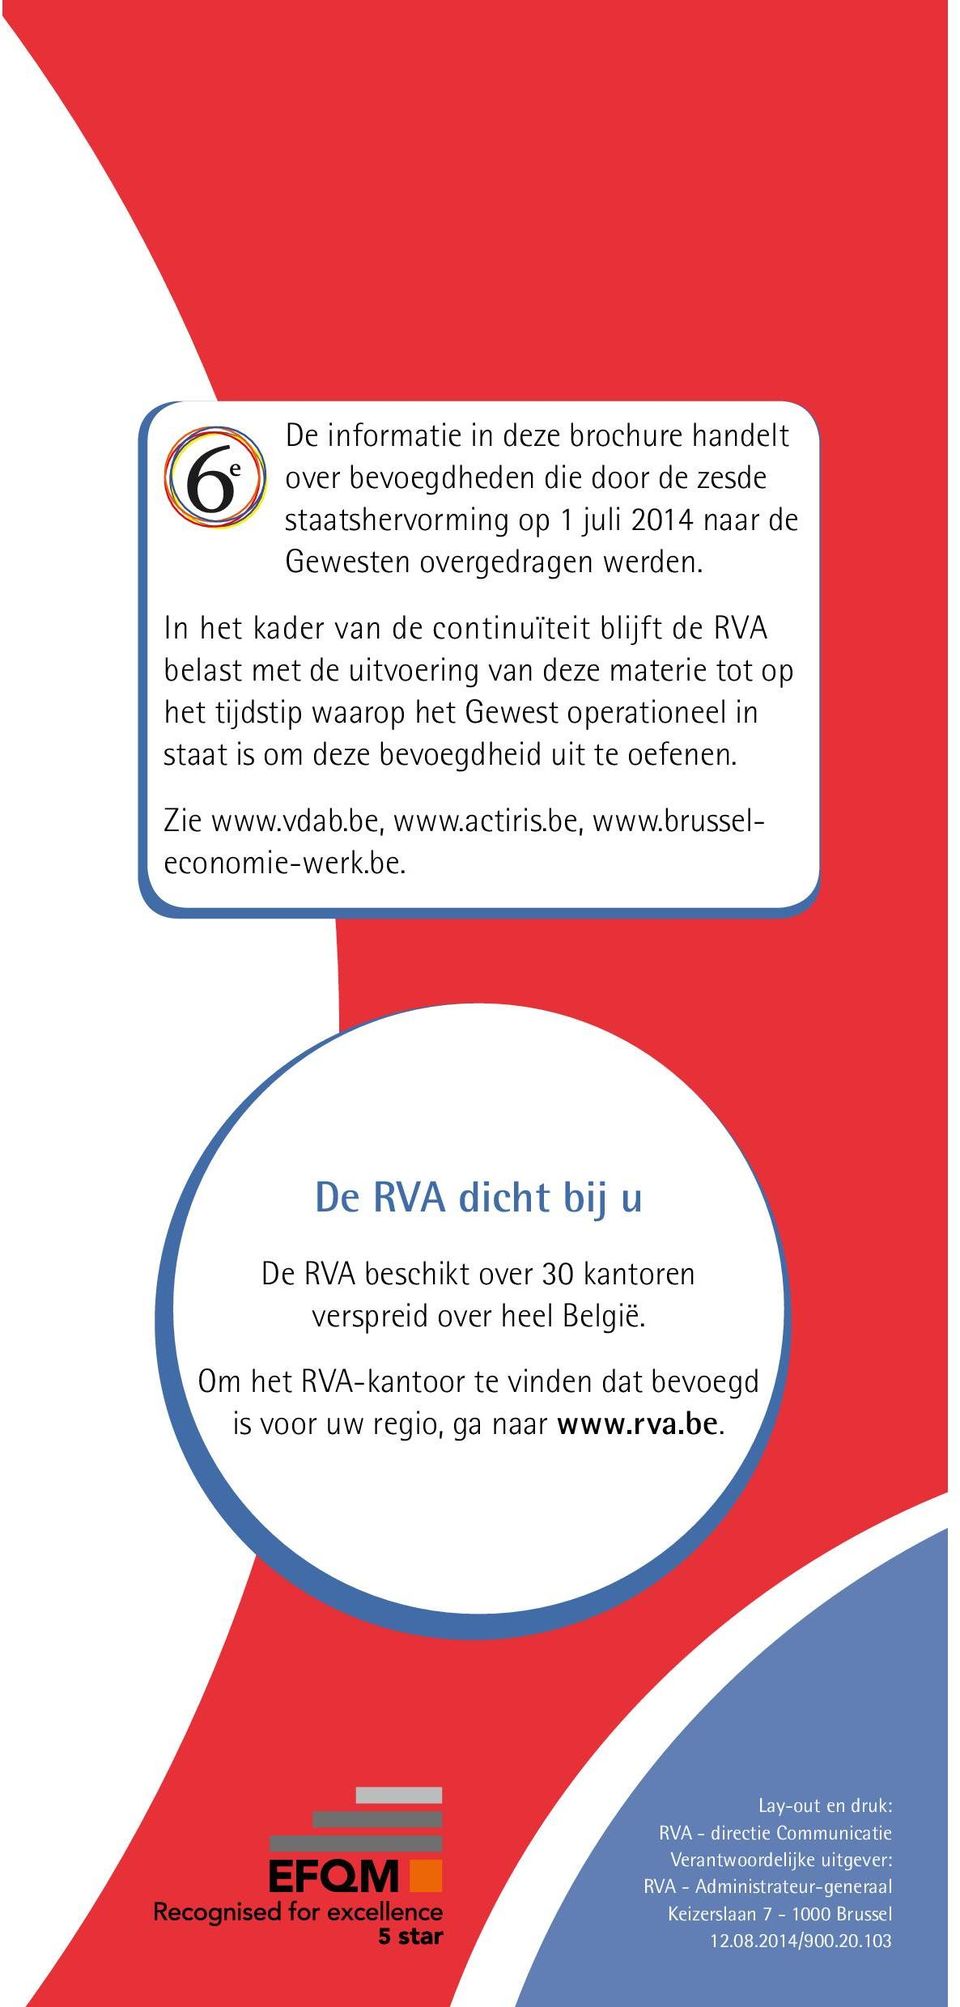 te oefenen. Zie www.vdab.be, www.actiris.be, www.brusseleconomie-werk.be. De RVA dicht bij u De RVA beschikt over 30 kantoren verspreid over heel België.